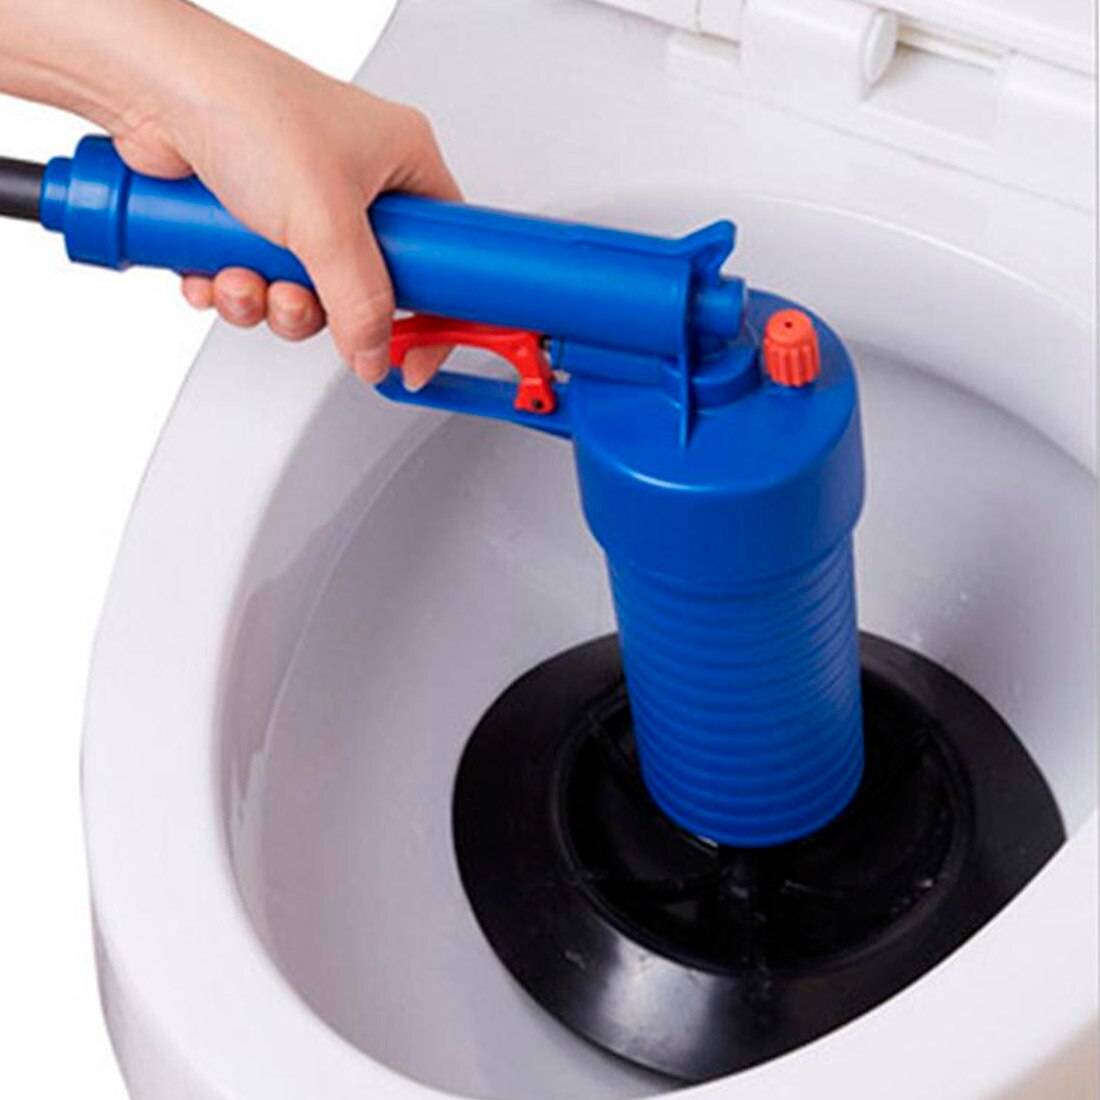 Прочистить унитаз без вантуза и троса: как убрать засор своими руками, способы пробить туалет